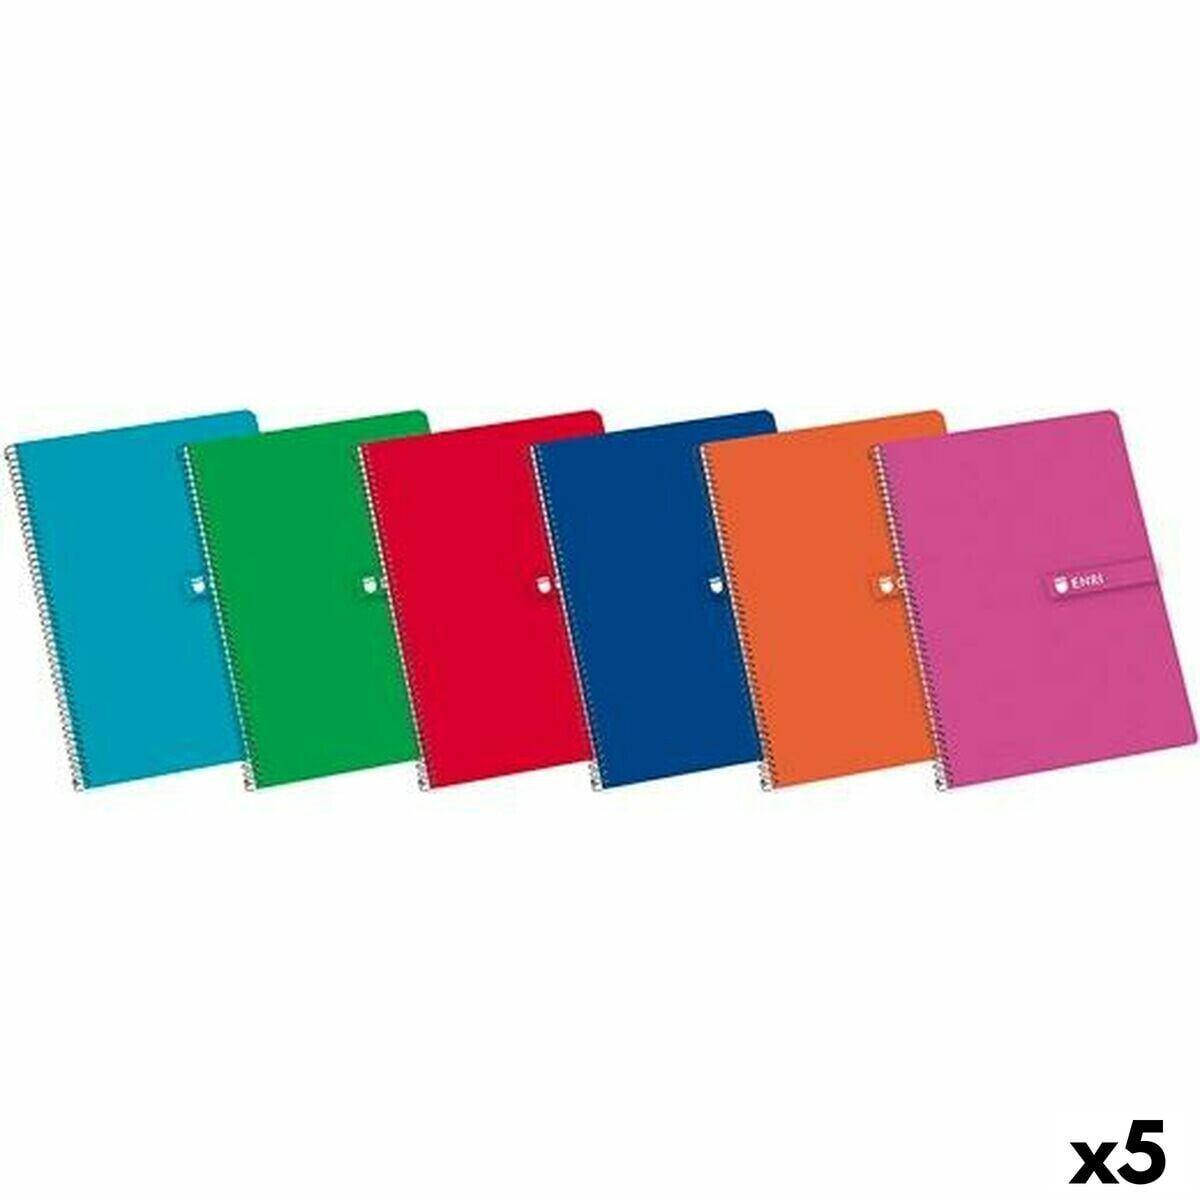 Notebook ENRI A4 80 Sheets (5 Units)